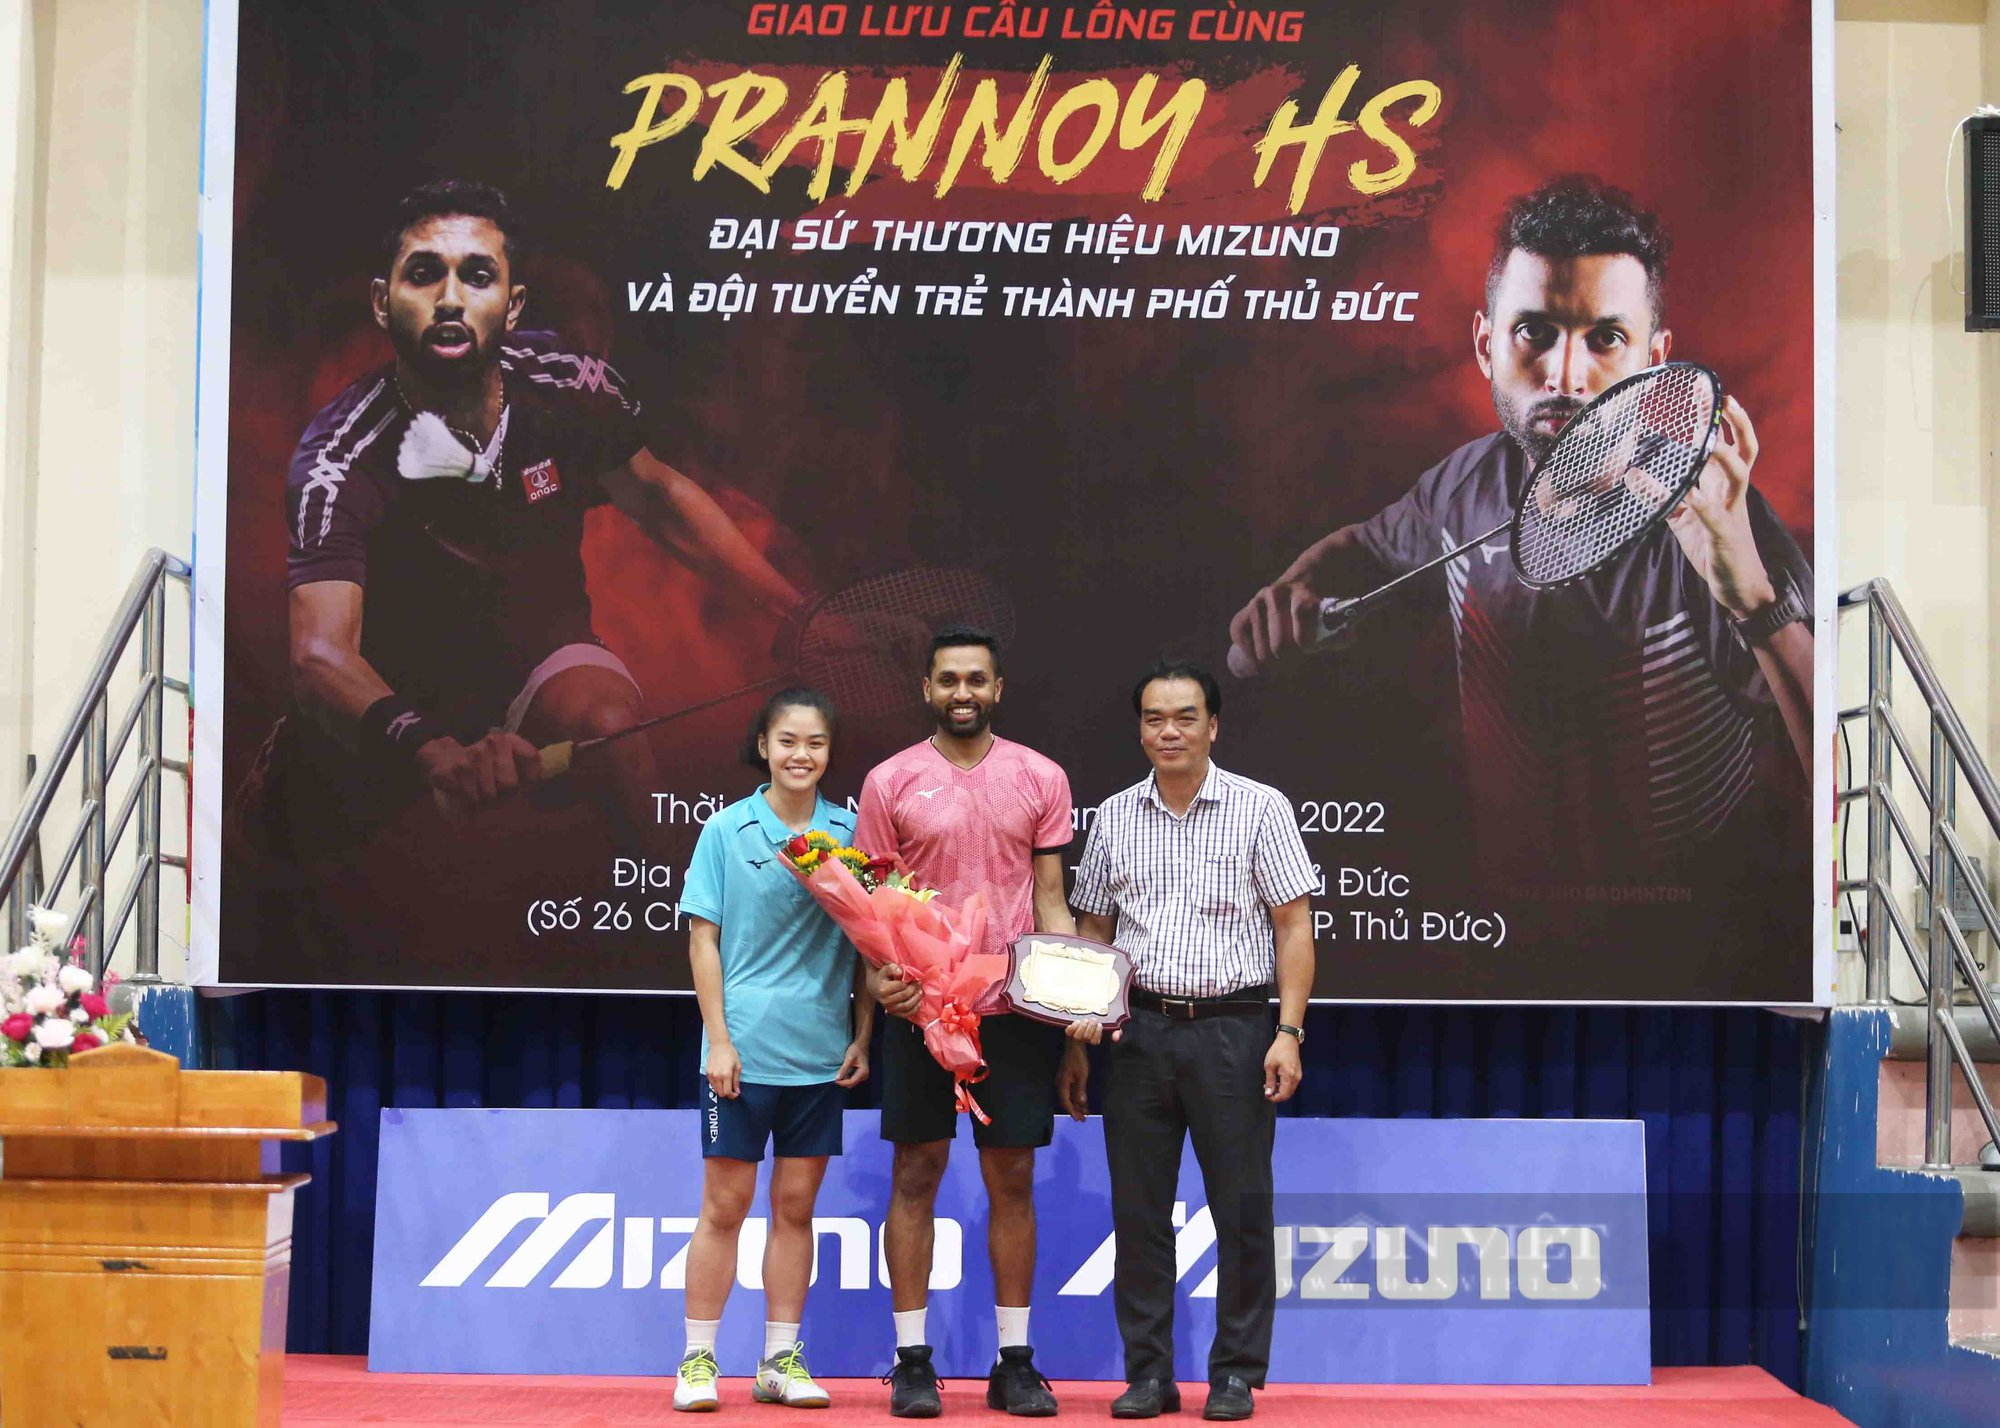 Nhà vô địch cầu lông thế giới Prannoy H.S truyền lửa đam mê cho trẻ em TP.HCM - Ảnh 2.